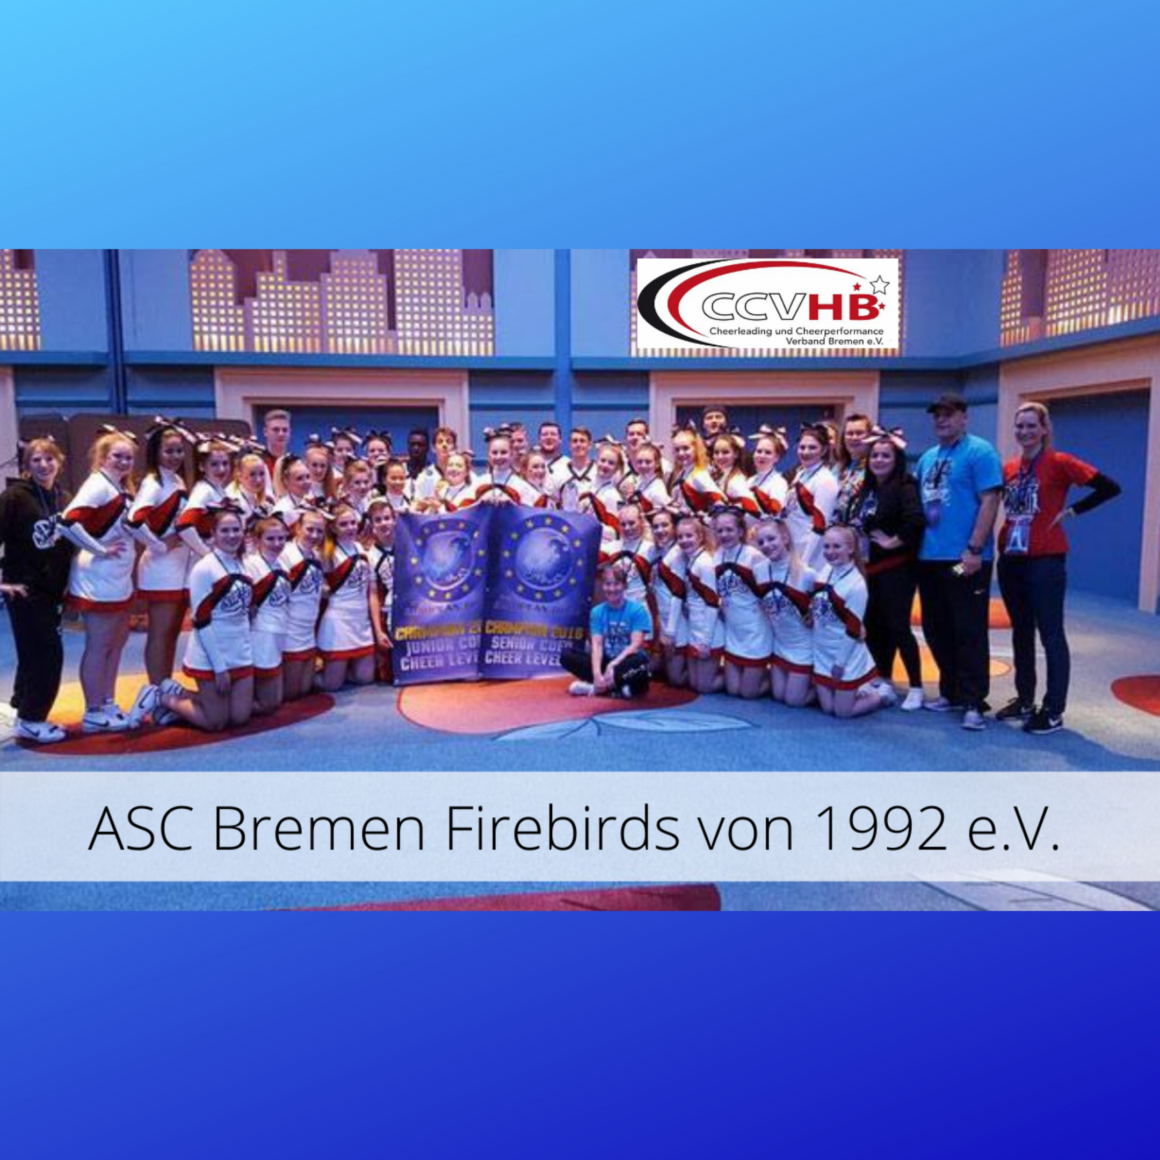 ASC Bremen Firebirds von 1992 e.V. – here we are